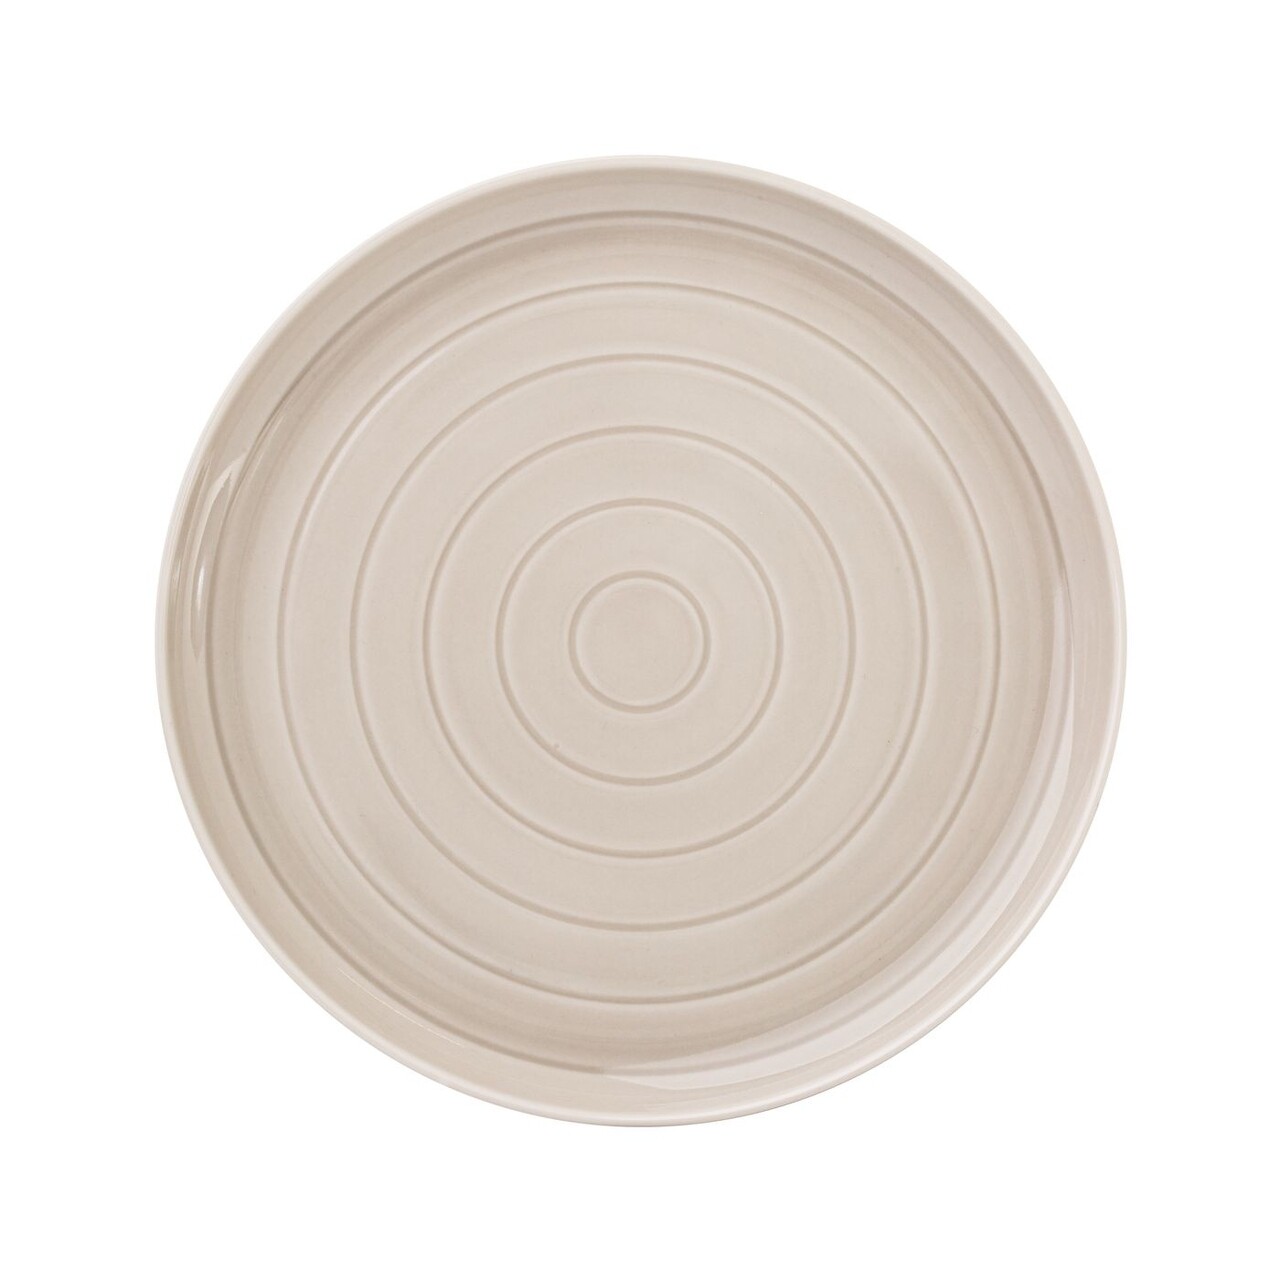 Piano Desszertes tányér, Ambition, 21 cm, porcelán, szürke